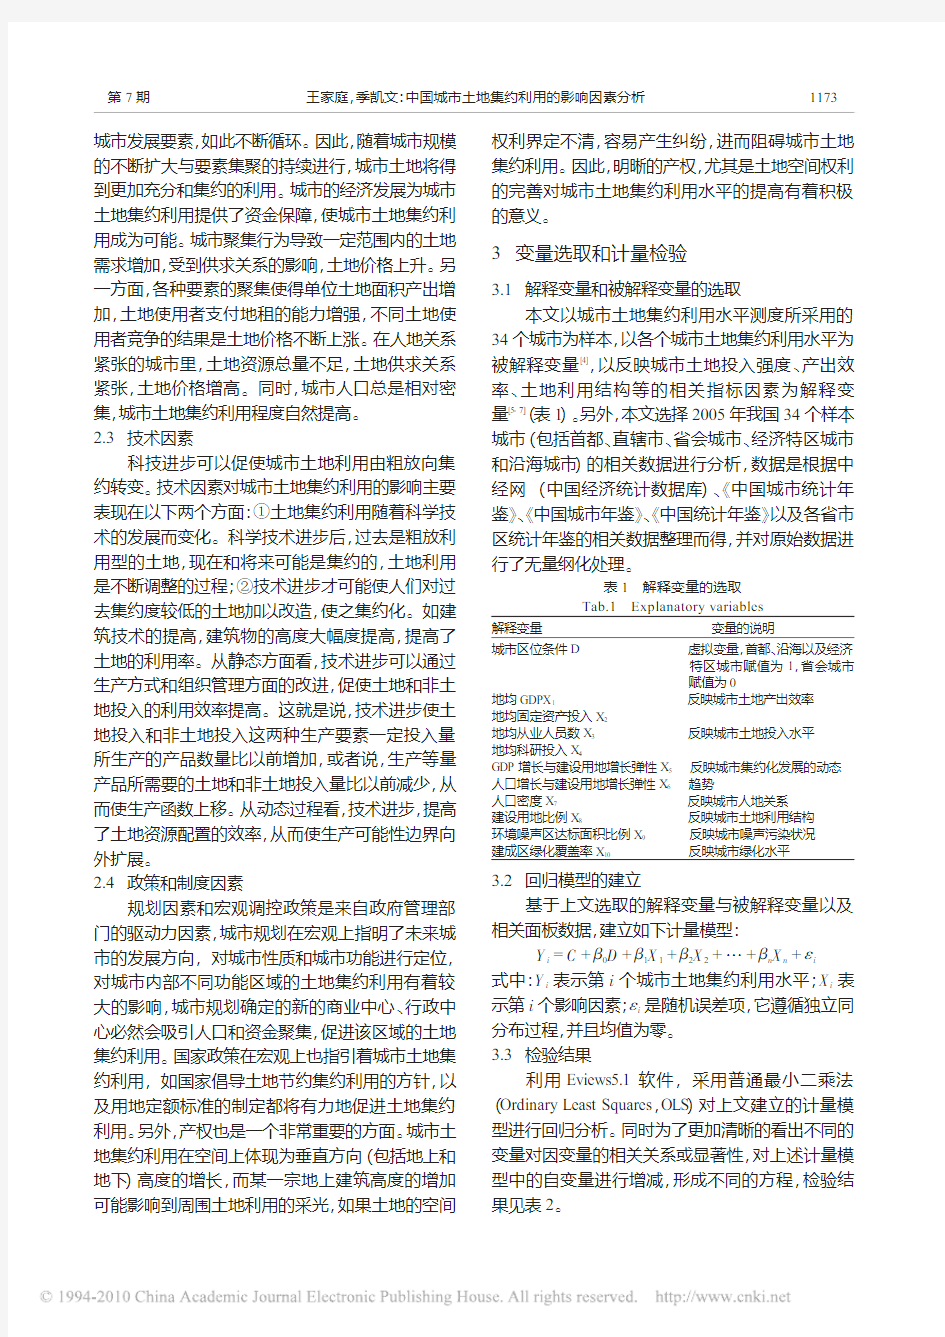 中国城市土地集约利用的影响因素分析_基于34个典型城市数据的实证研究